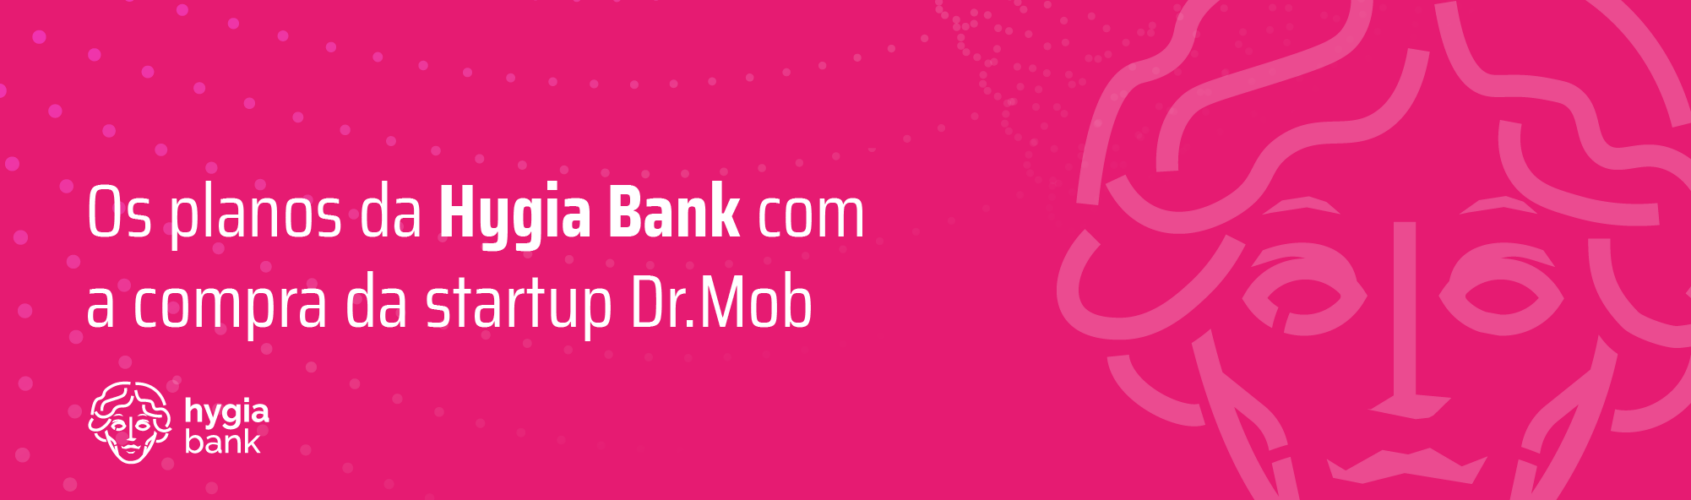 Os planos da Hygia Bank com a compra da startup Dr.Mob